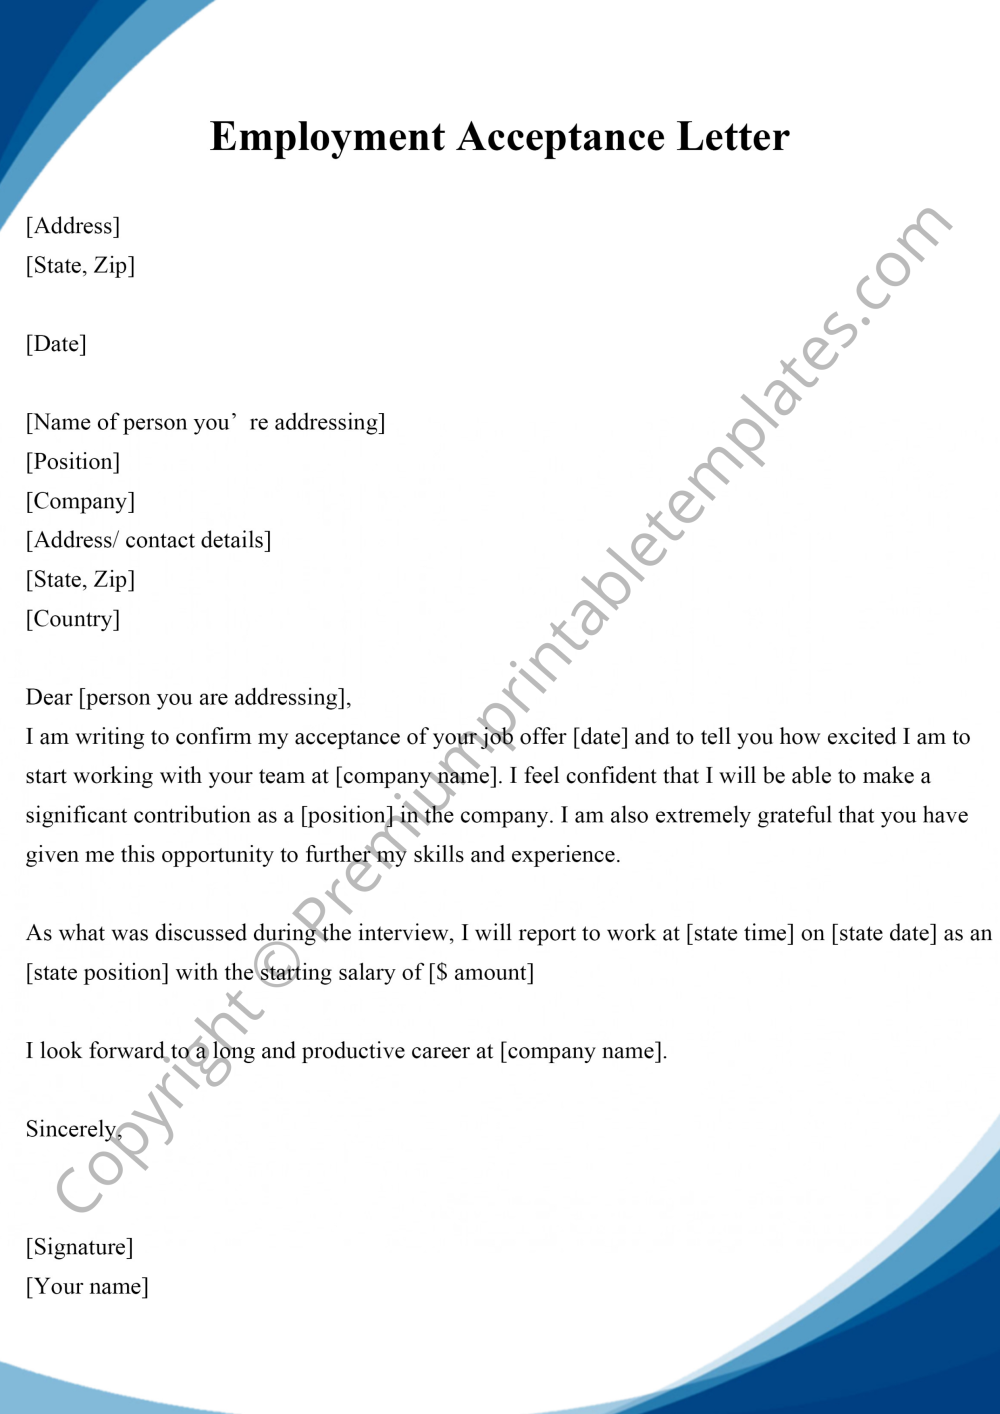 Employment Acceptance Letter PDF